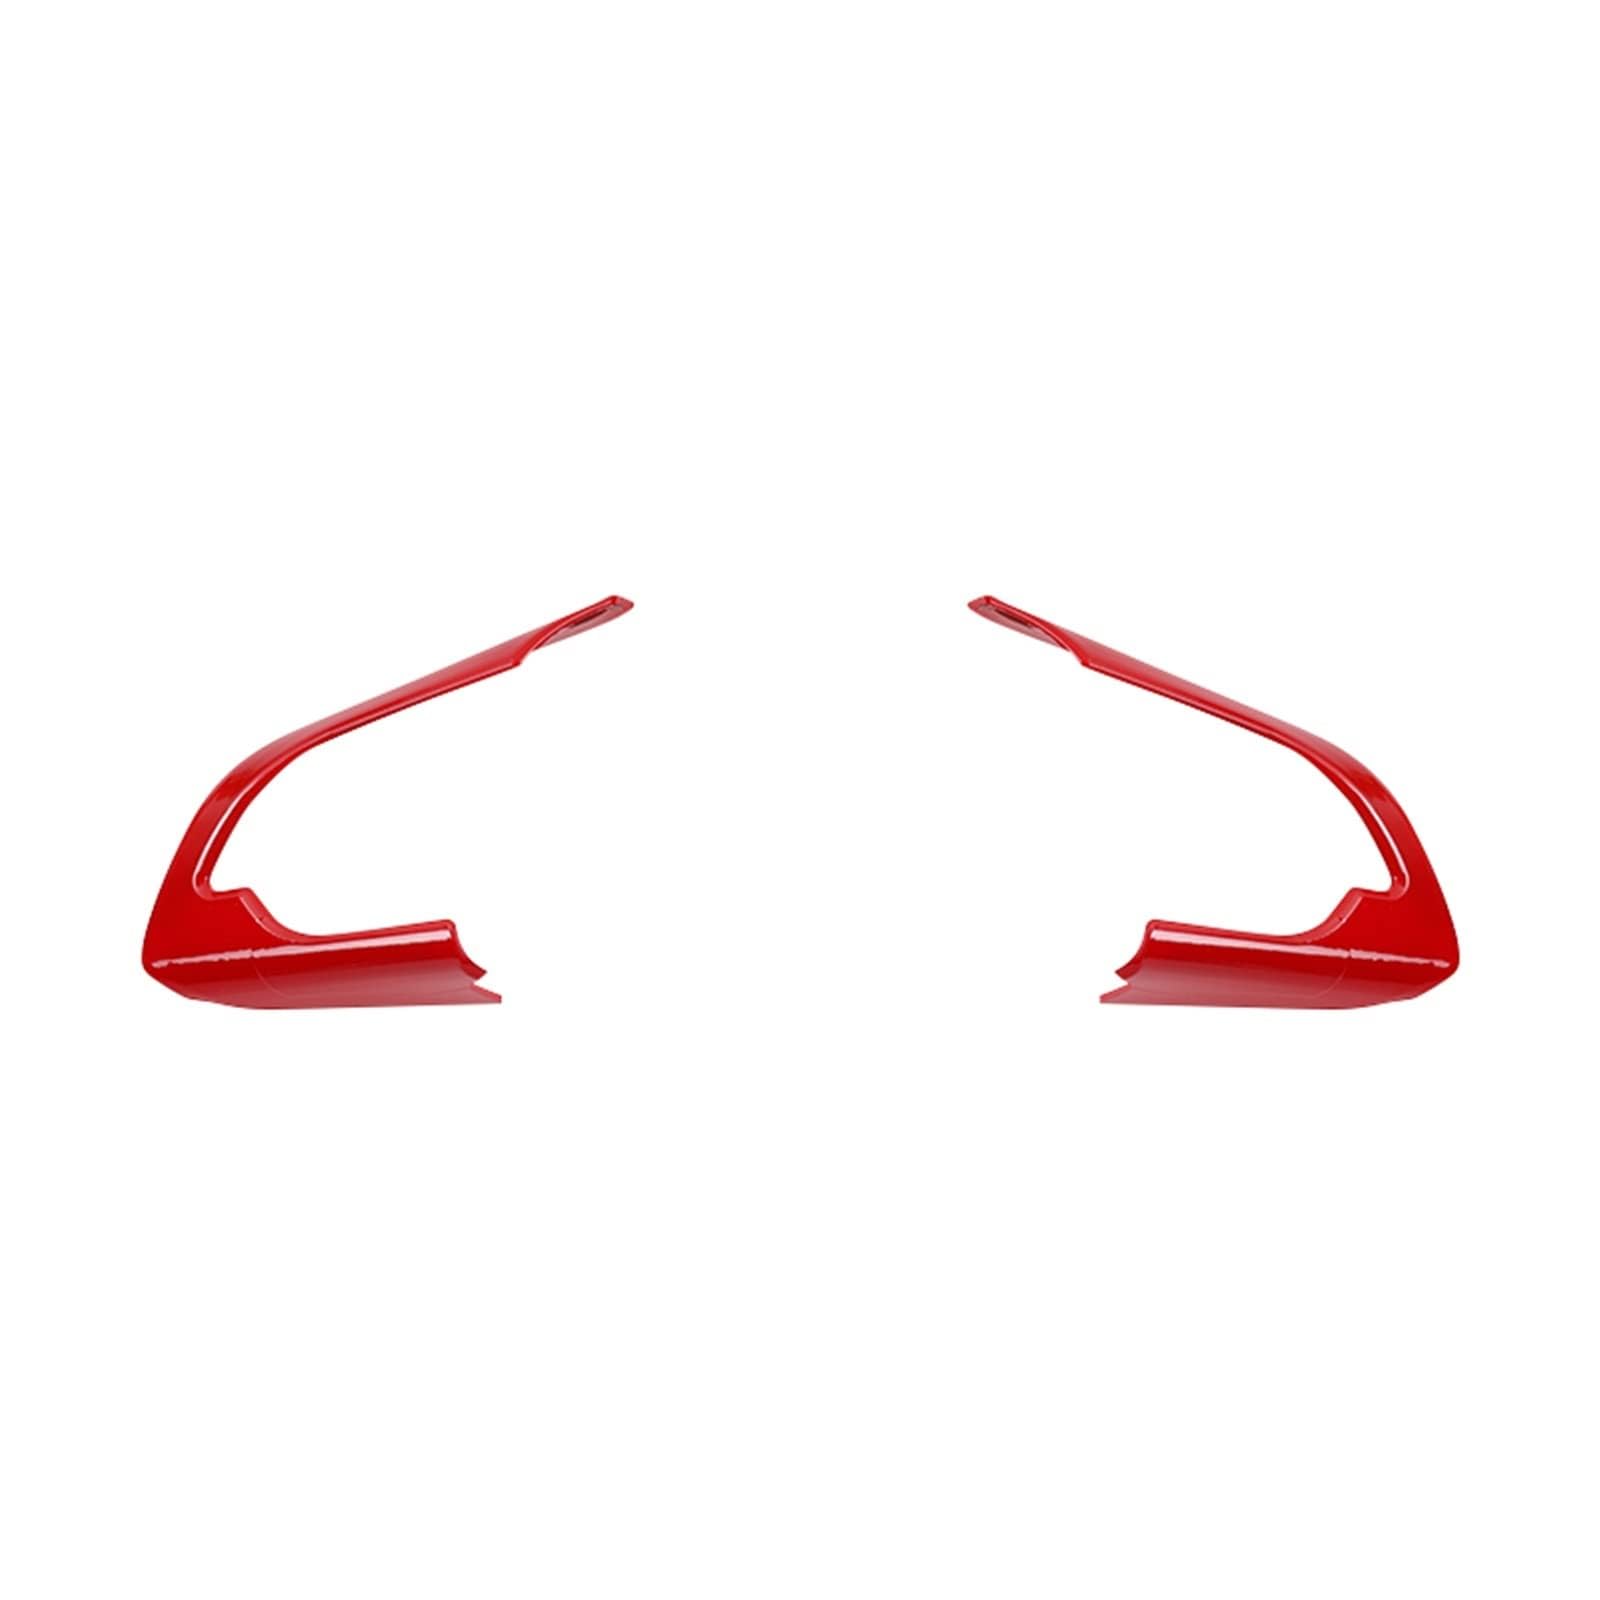 Auto Lenkrad Verkleidung Dekoration für Suzuki Jimny 2019+,Kratzfeste SchutzhüLle FüR Das Lenkrad,Lenkradabdeckung Rahmenverkleidung Aufkleber,B-Red von XBTGHWMZ